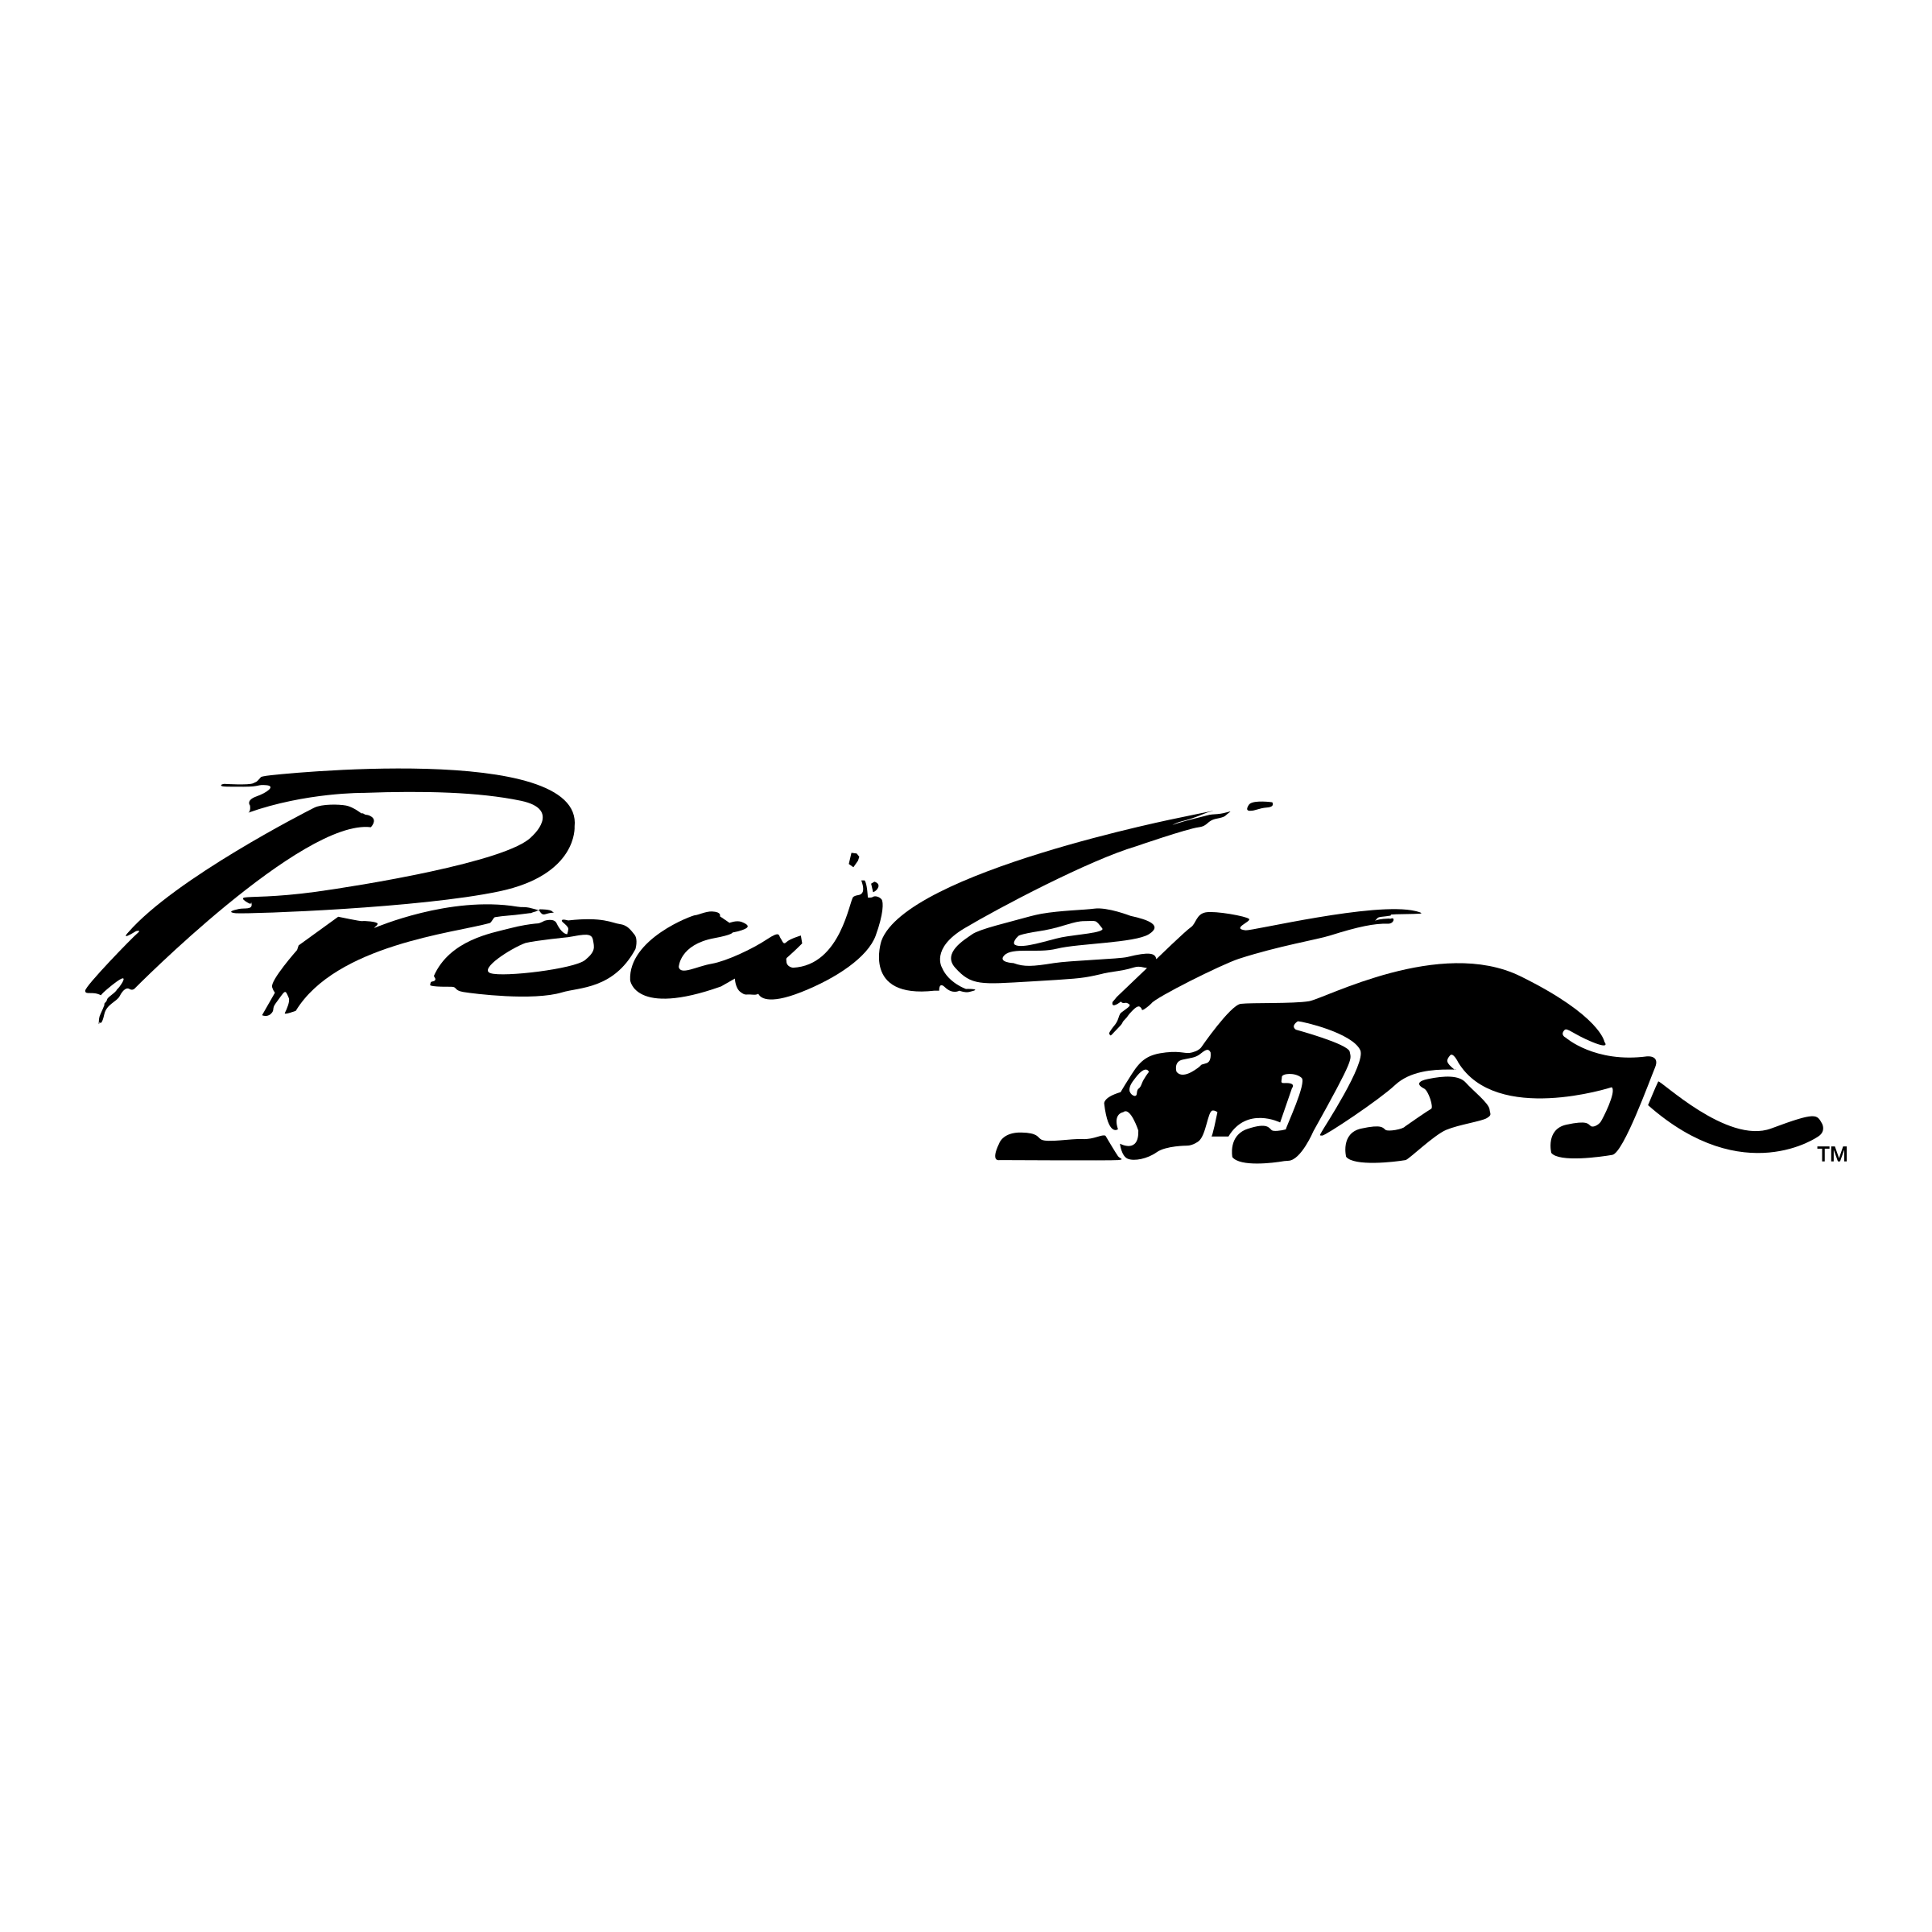 Prowler Logo - Prowler Logo PNG Transparent & SVG Vector